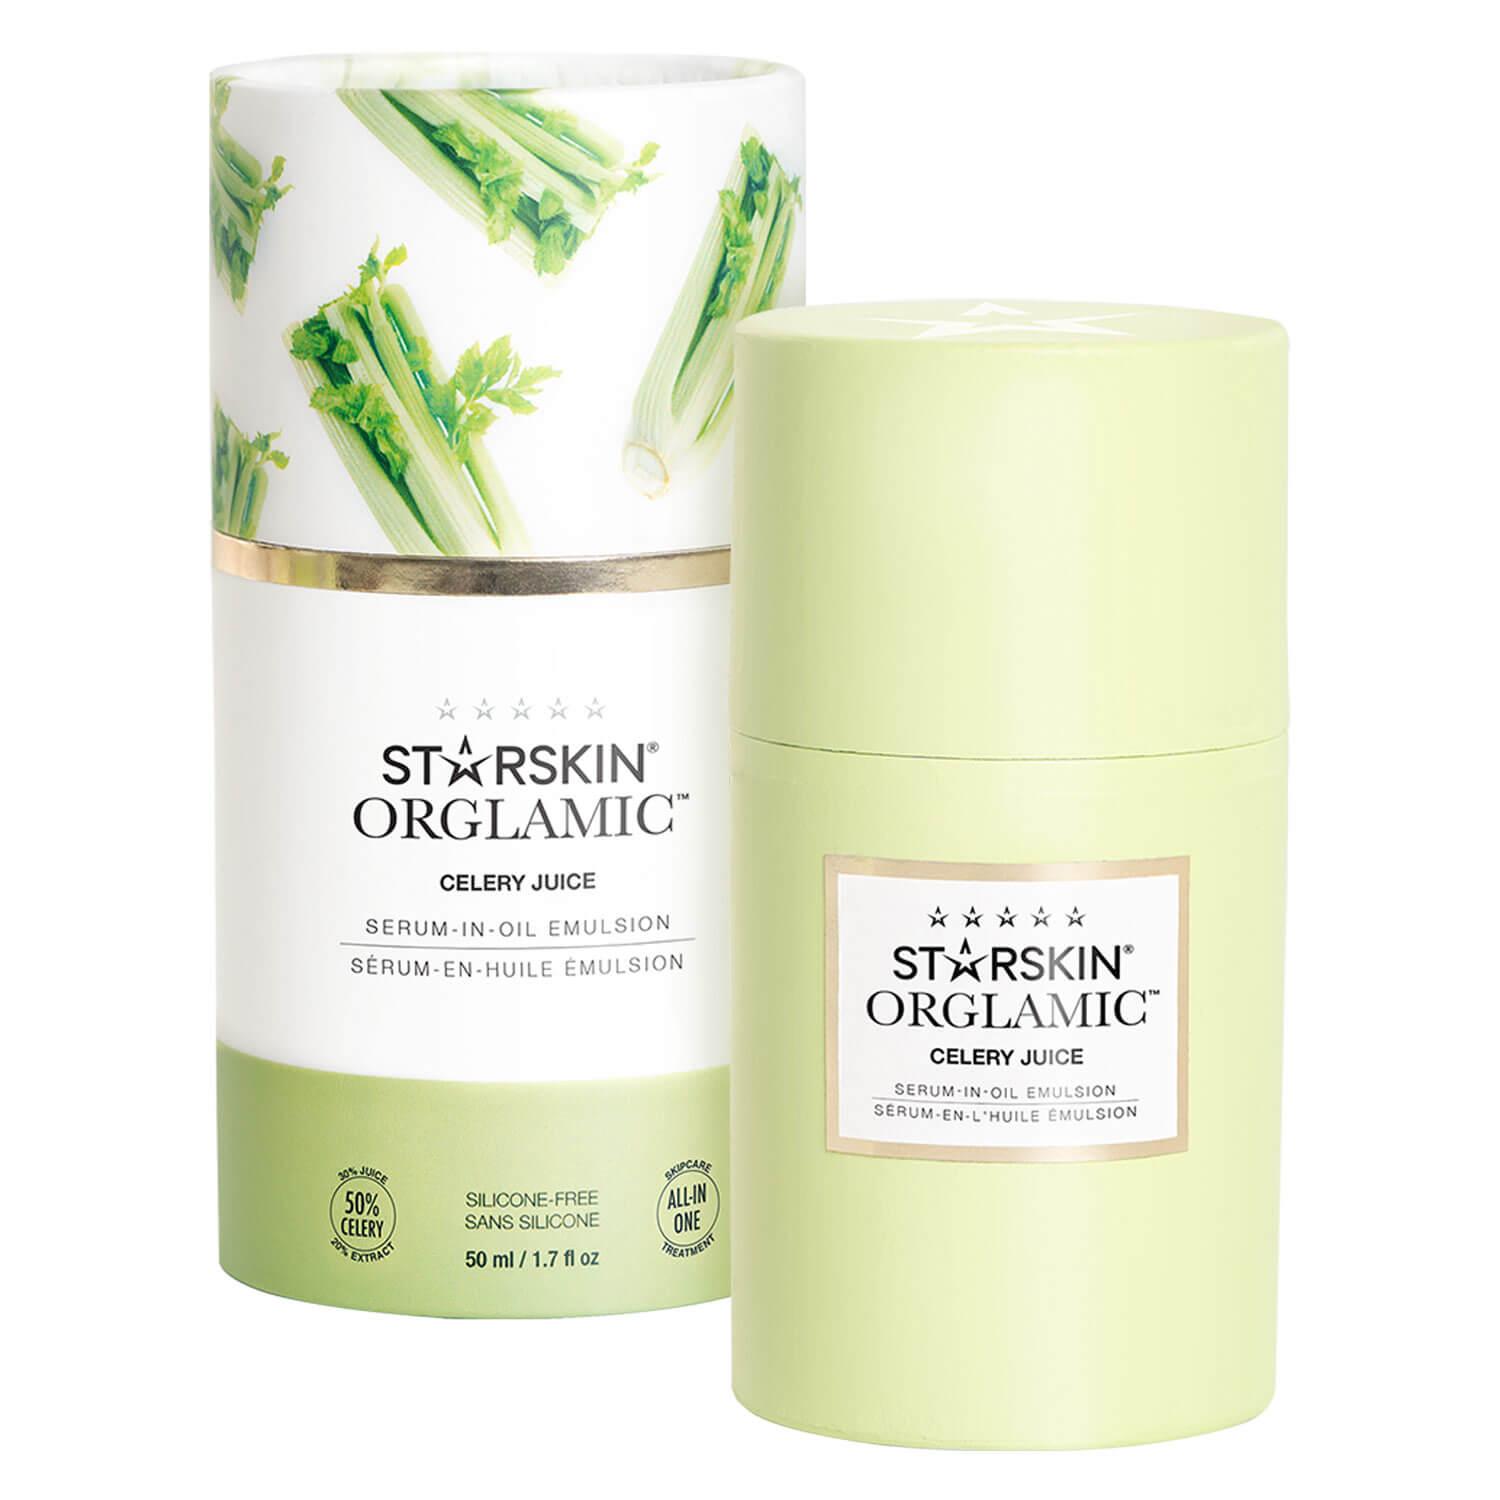 STARSKIN - ORGLAMIC Celery Juice Serum in Oil Emulsion